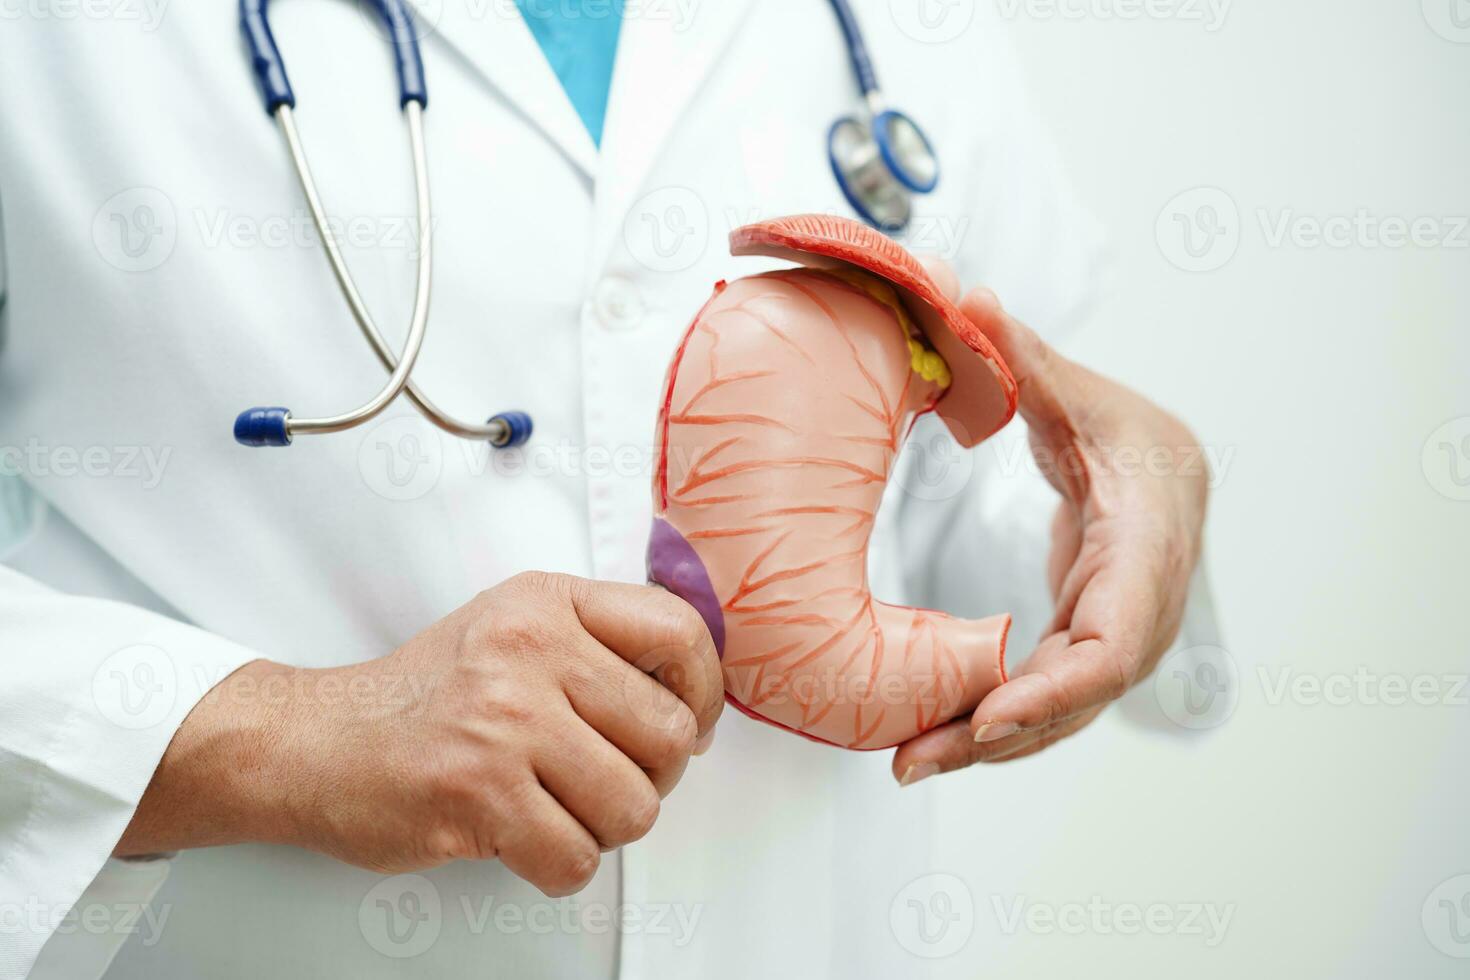 maag ziekte, dokter Holding anatomie model- voor studie diagnose en behandeling in ziekenhuis. foto